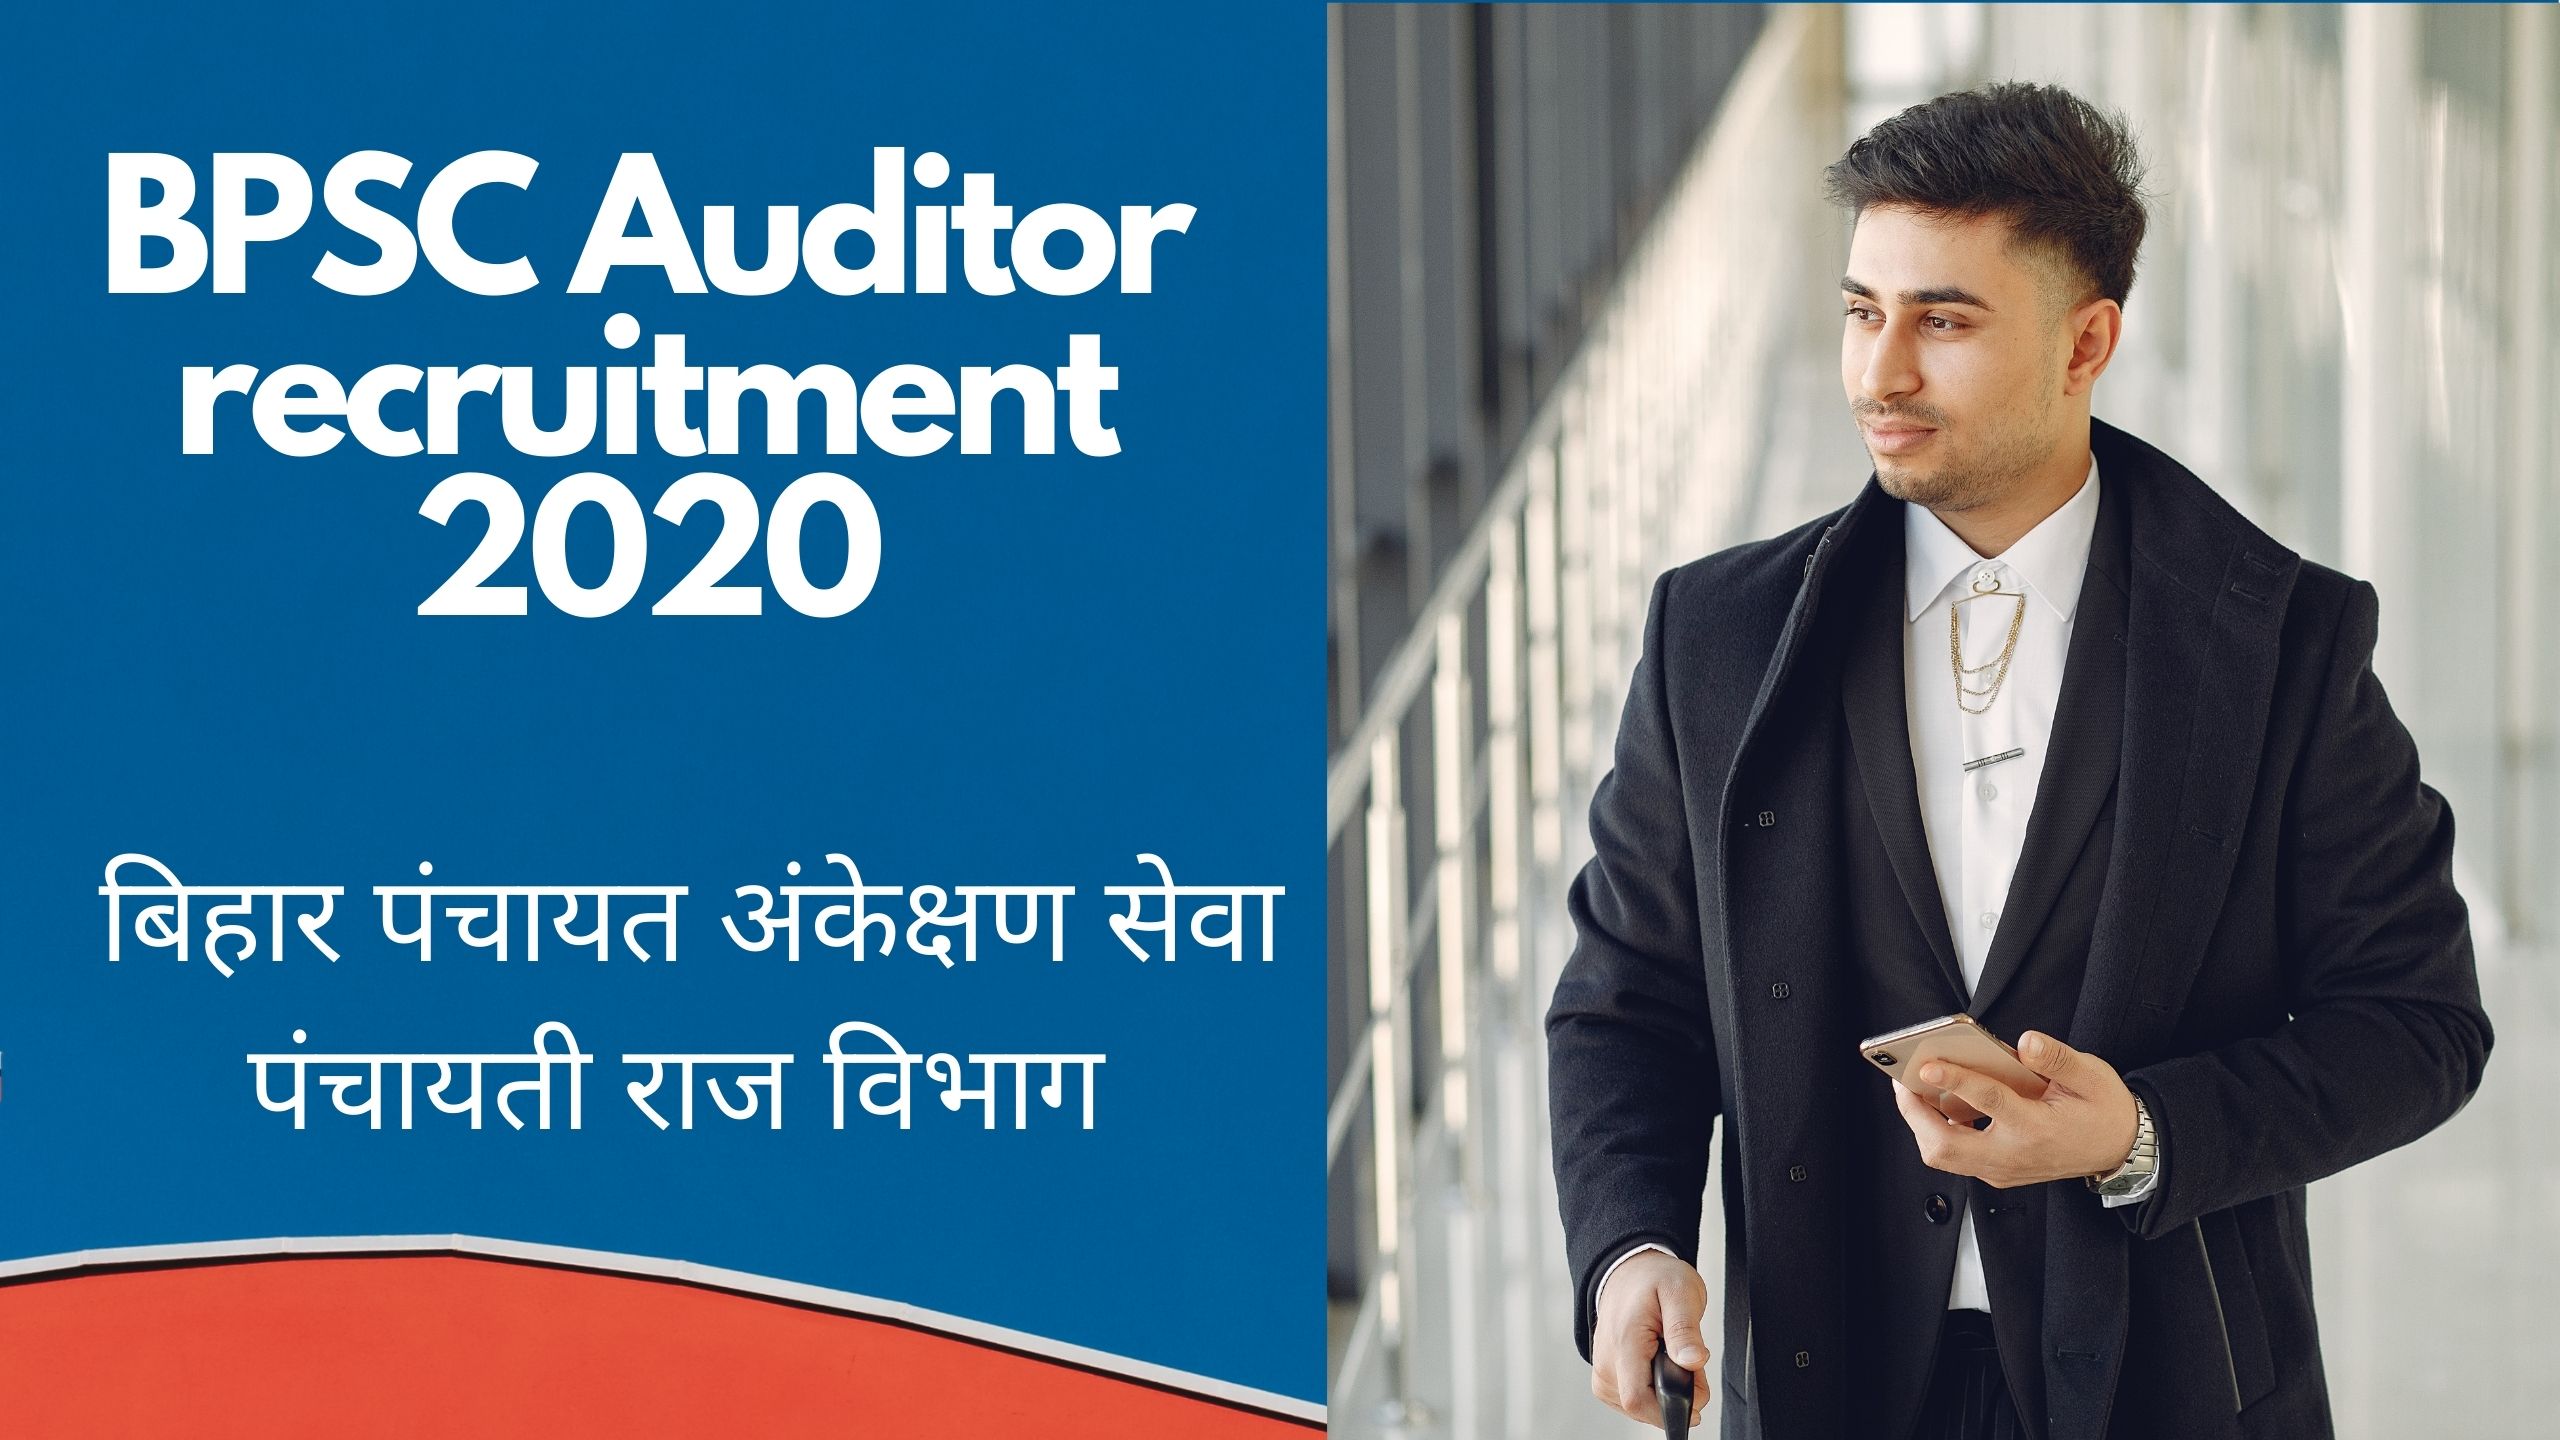 BPSC Auditor recruitment 2020